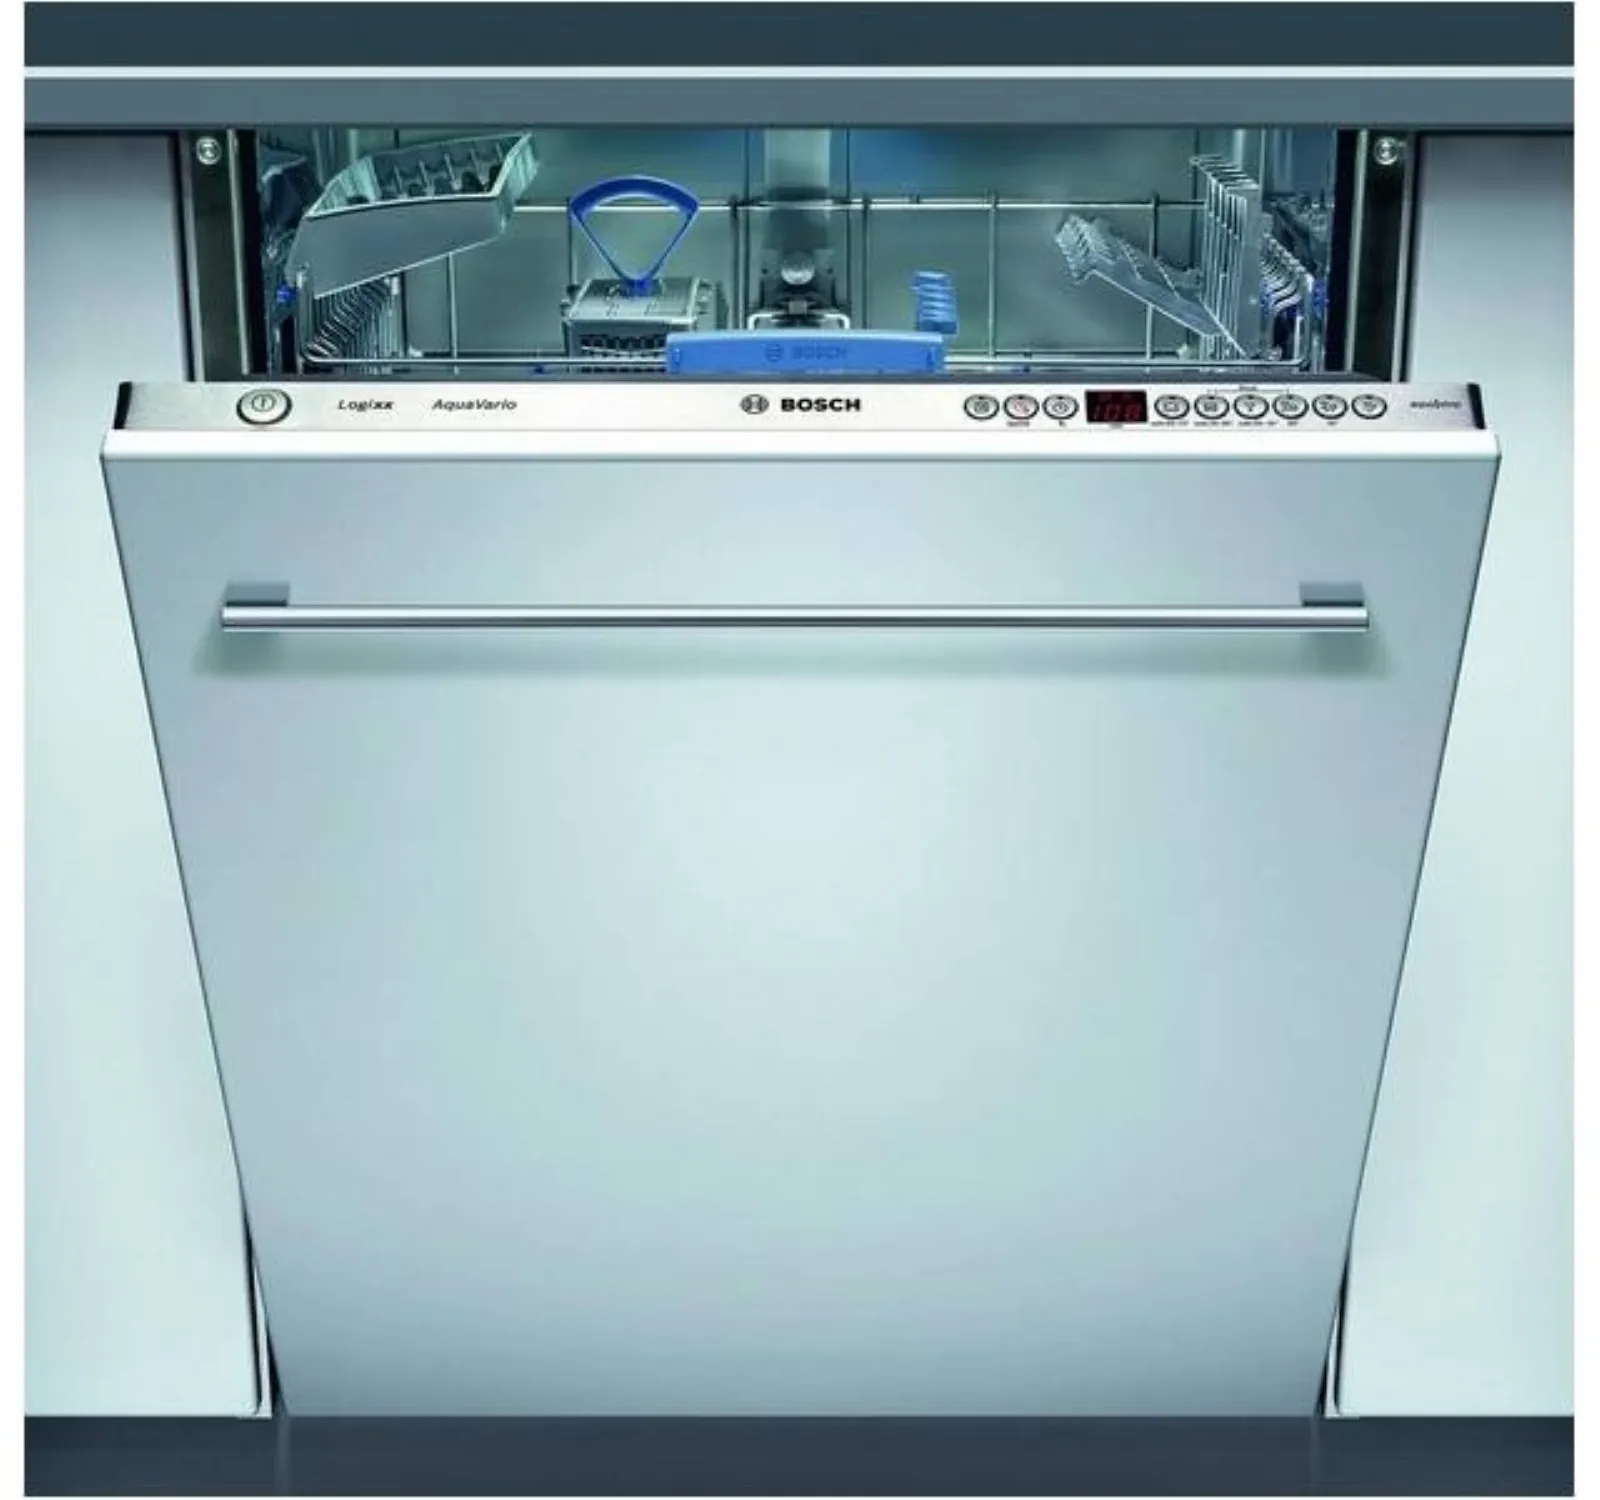 Посудомойка бош 60 встраиваемая купить. Посудомоечная машина Bosch SGV 43e43. Посудомоечная машина Bosch SGV 59a03. Посудомоечная машина Bosch 60 см встраиваемая. Посудомоечная машина бош 60 см встраиваемая.